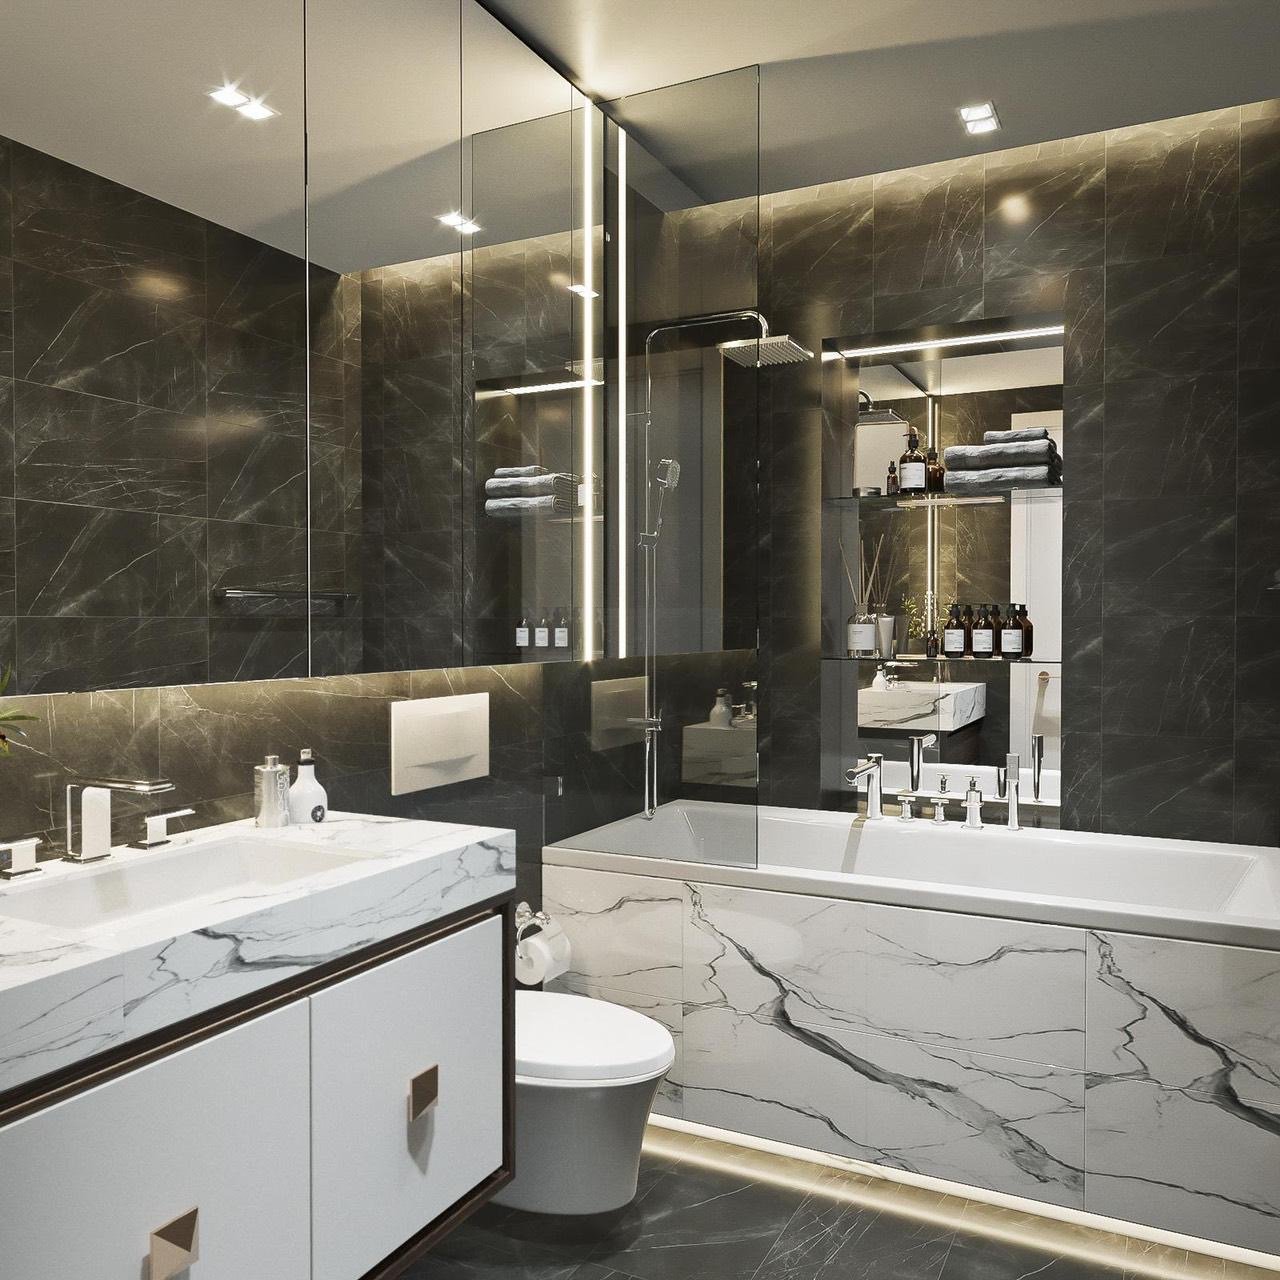 Phòng tắm, nhà vệ sinh, phong cách Hiện đại Modern, thiết kế concept nội thất, nhà phố Quận Bình Tân